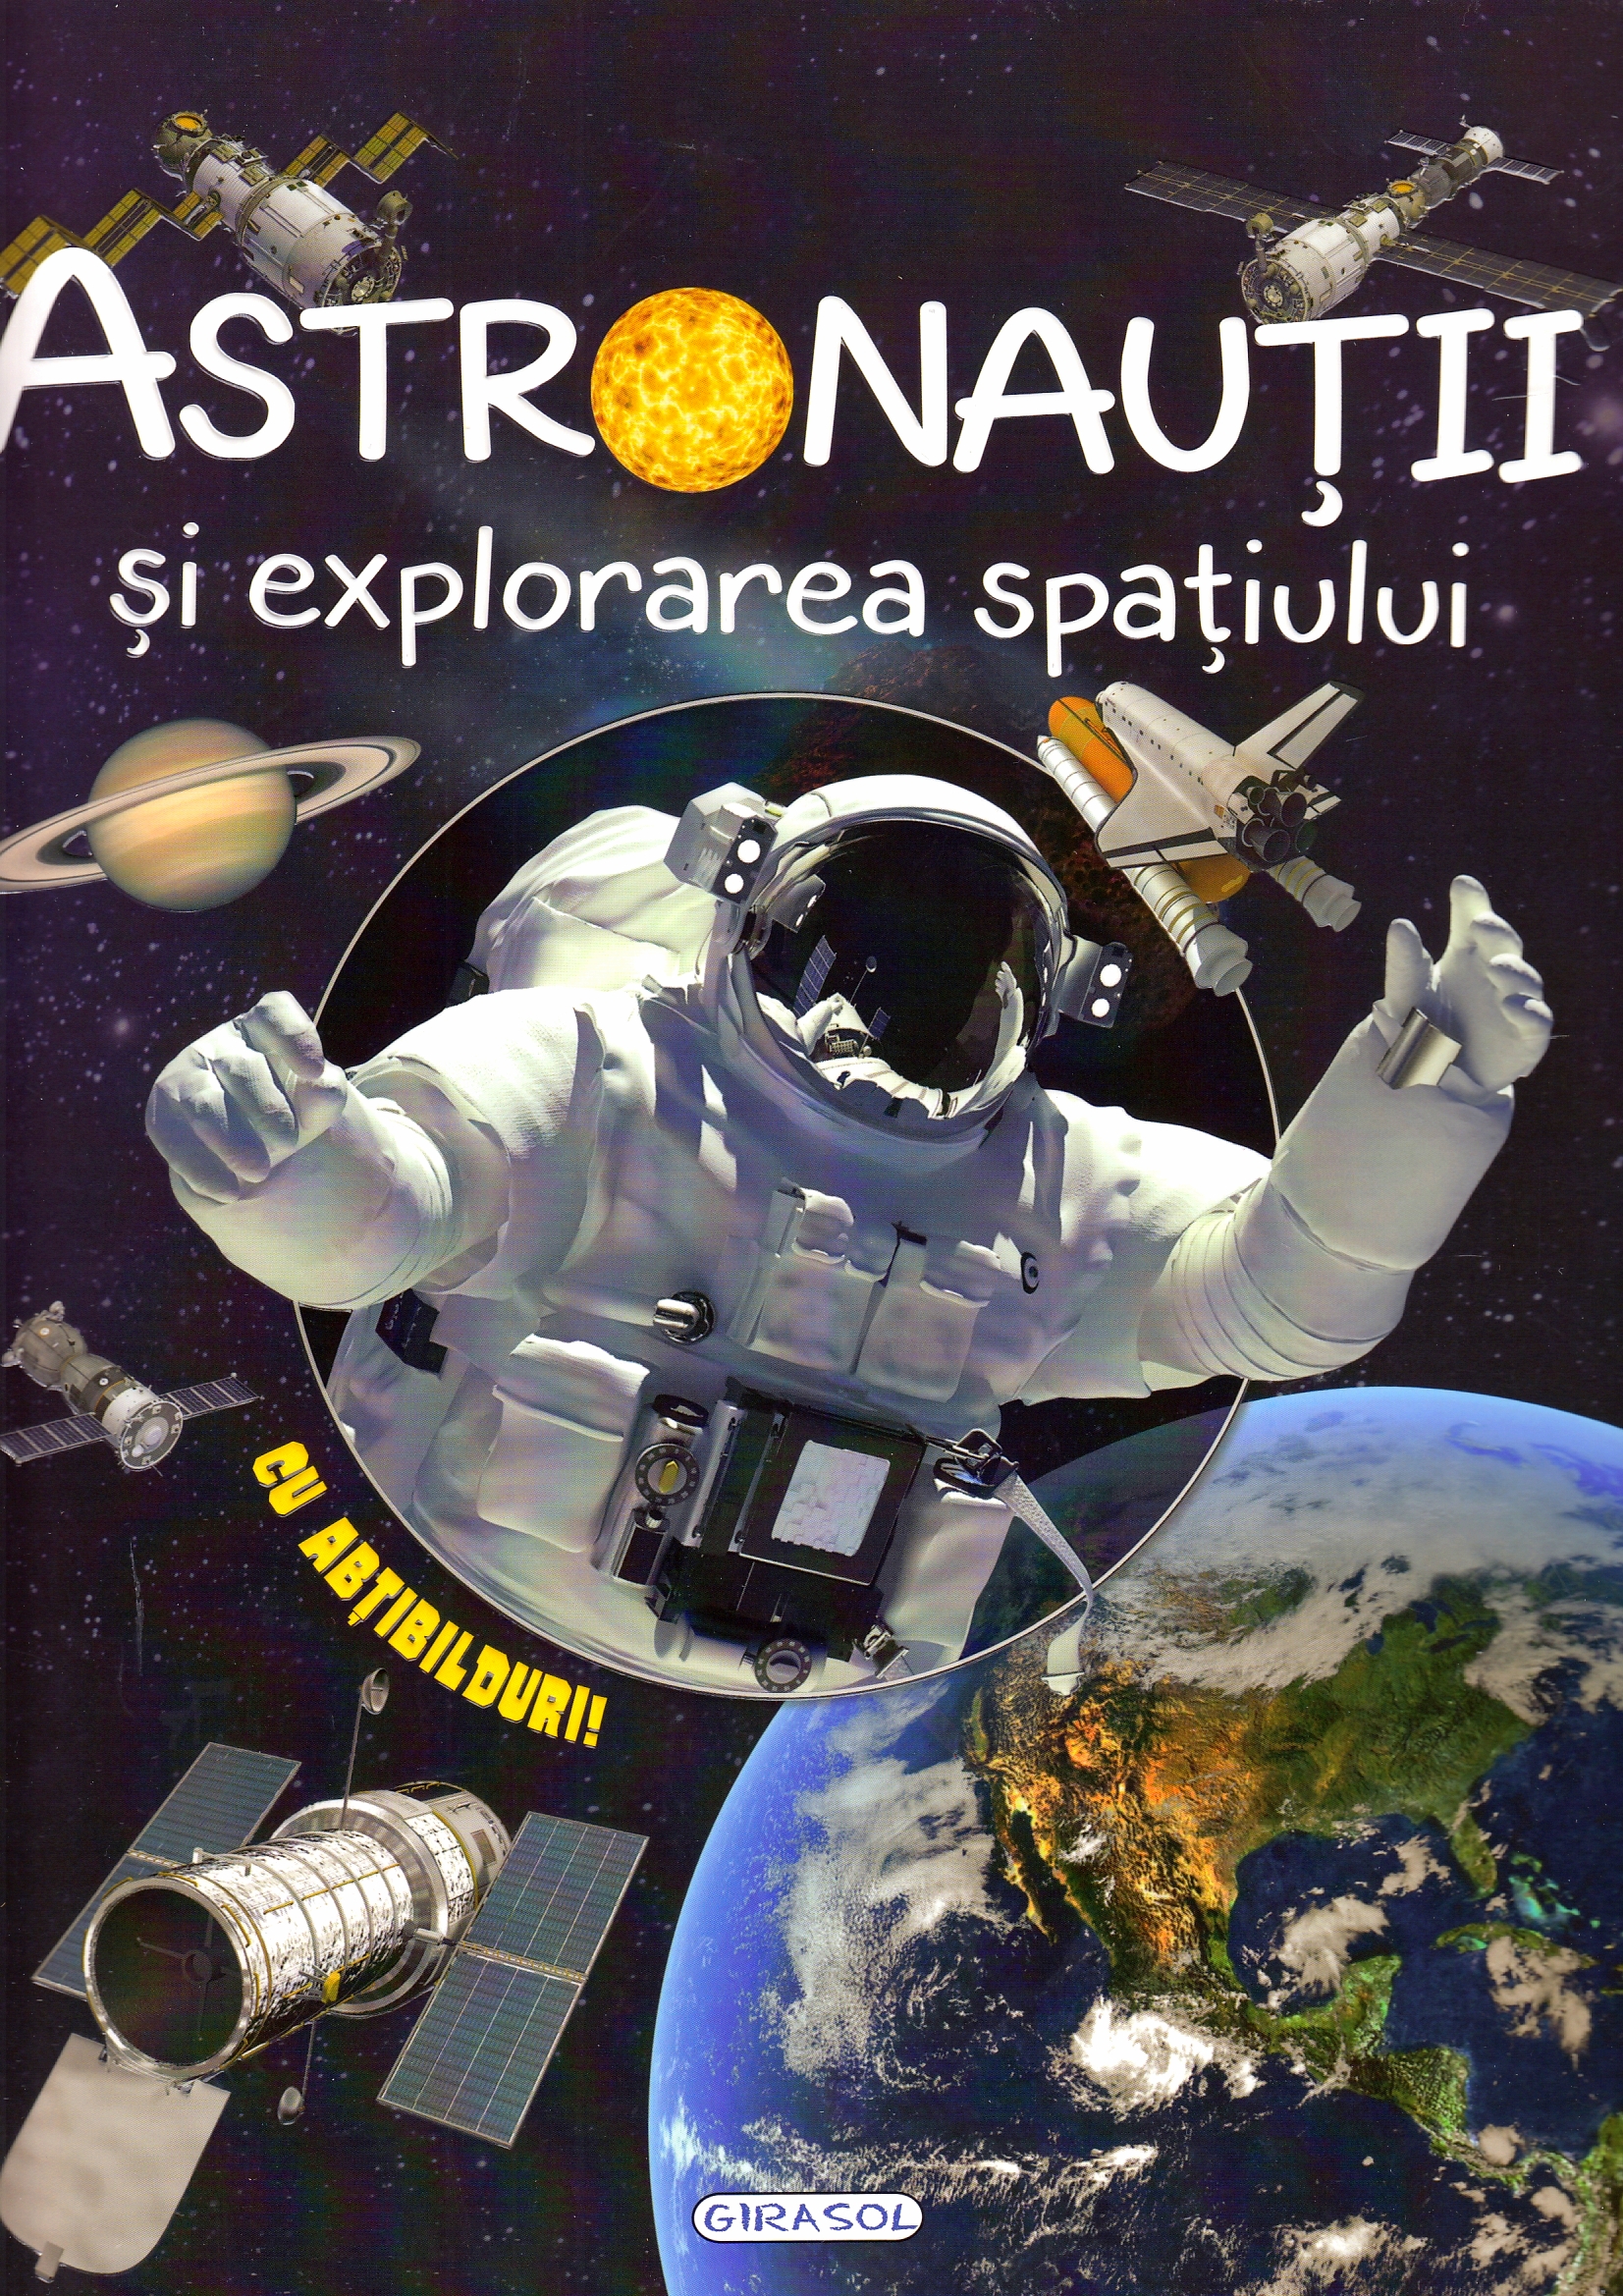 Cosmos: Astronautii si explorarea spatiului